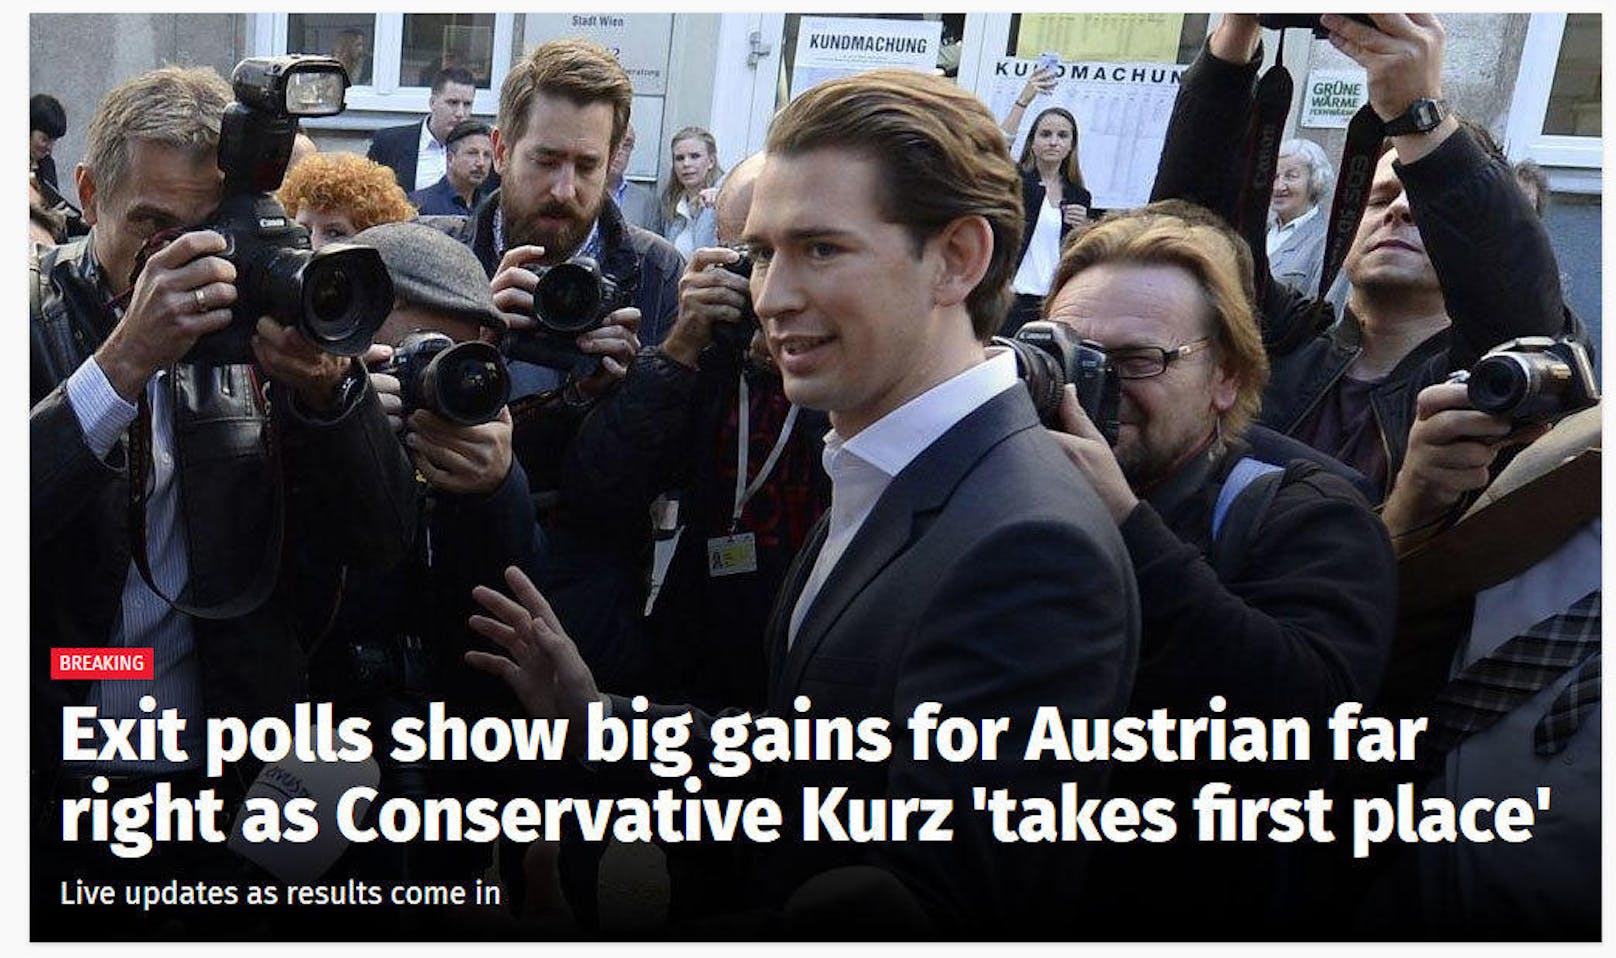 <b>Independent.co.uk:</b> "Hochrechnungen zeigen großen Zuwachs für Österreichs Rechtsaußen-Partei, während der Konservative Kurz 'den ersten Platz holt'"